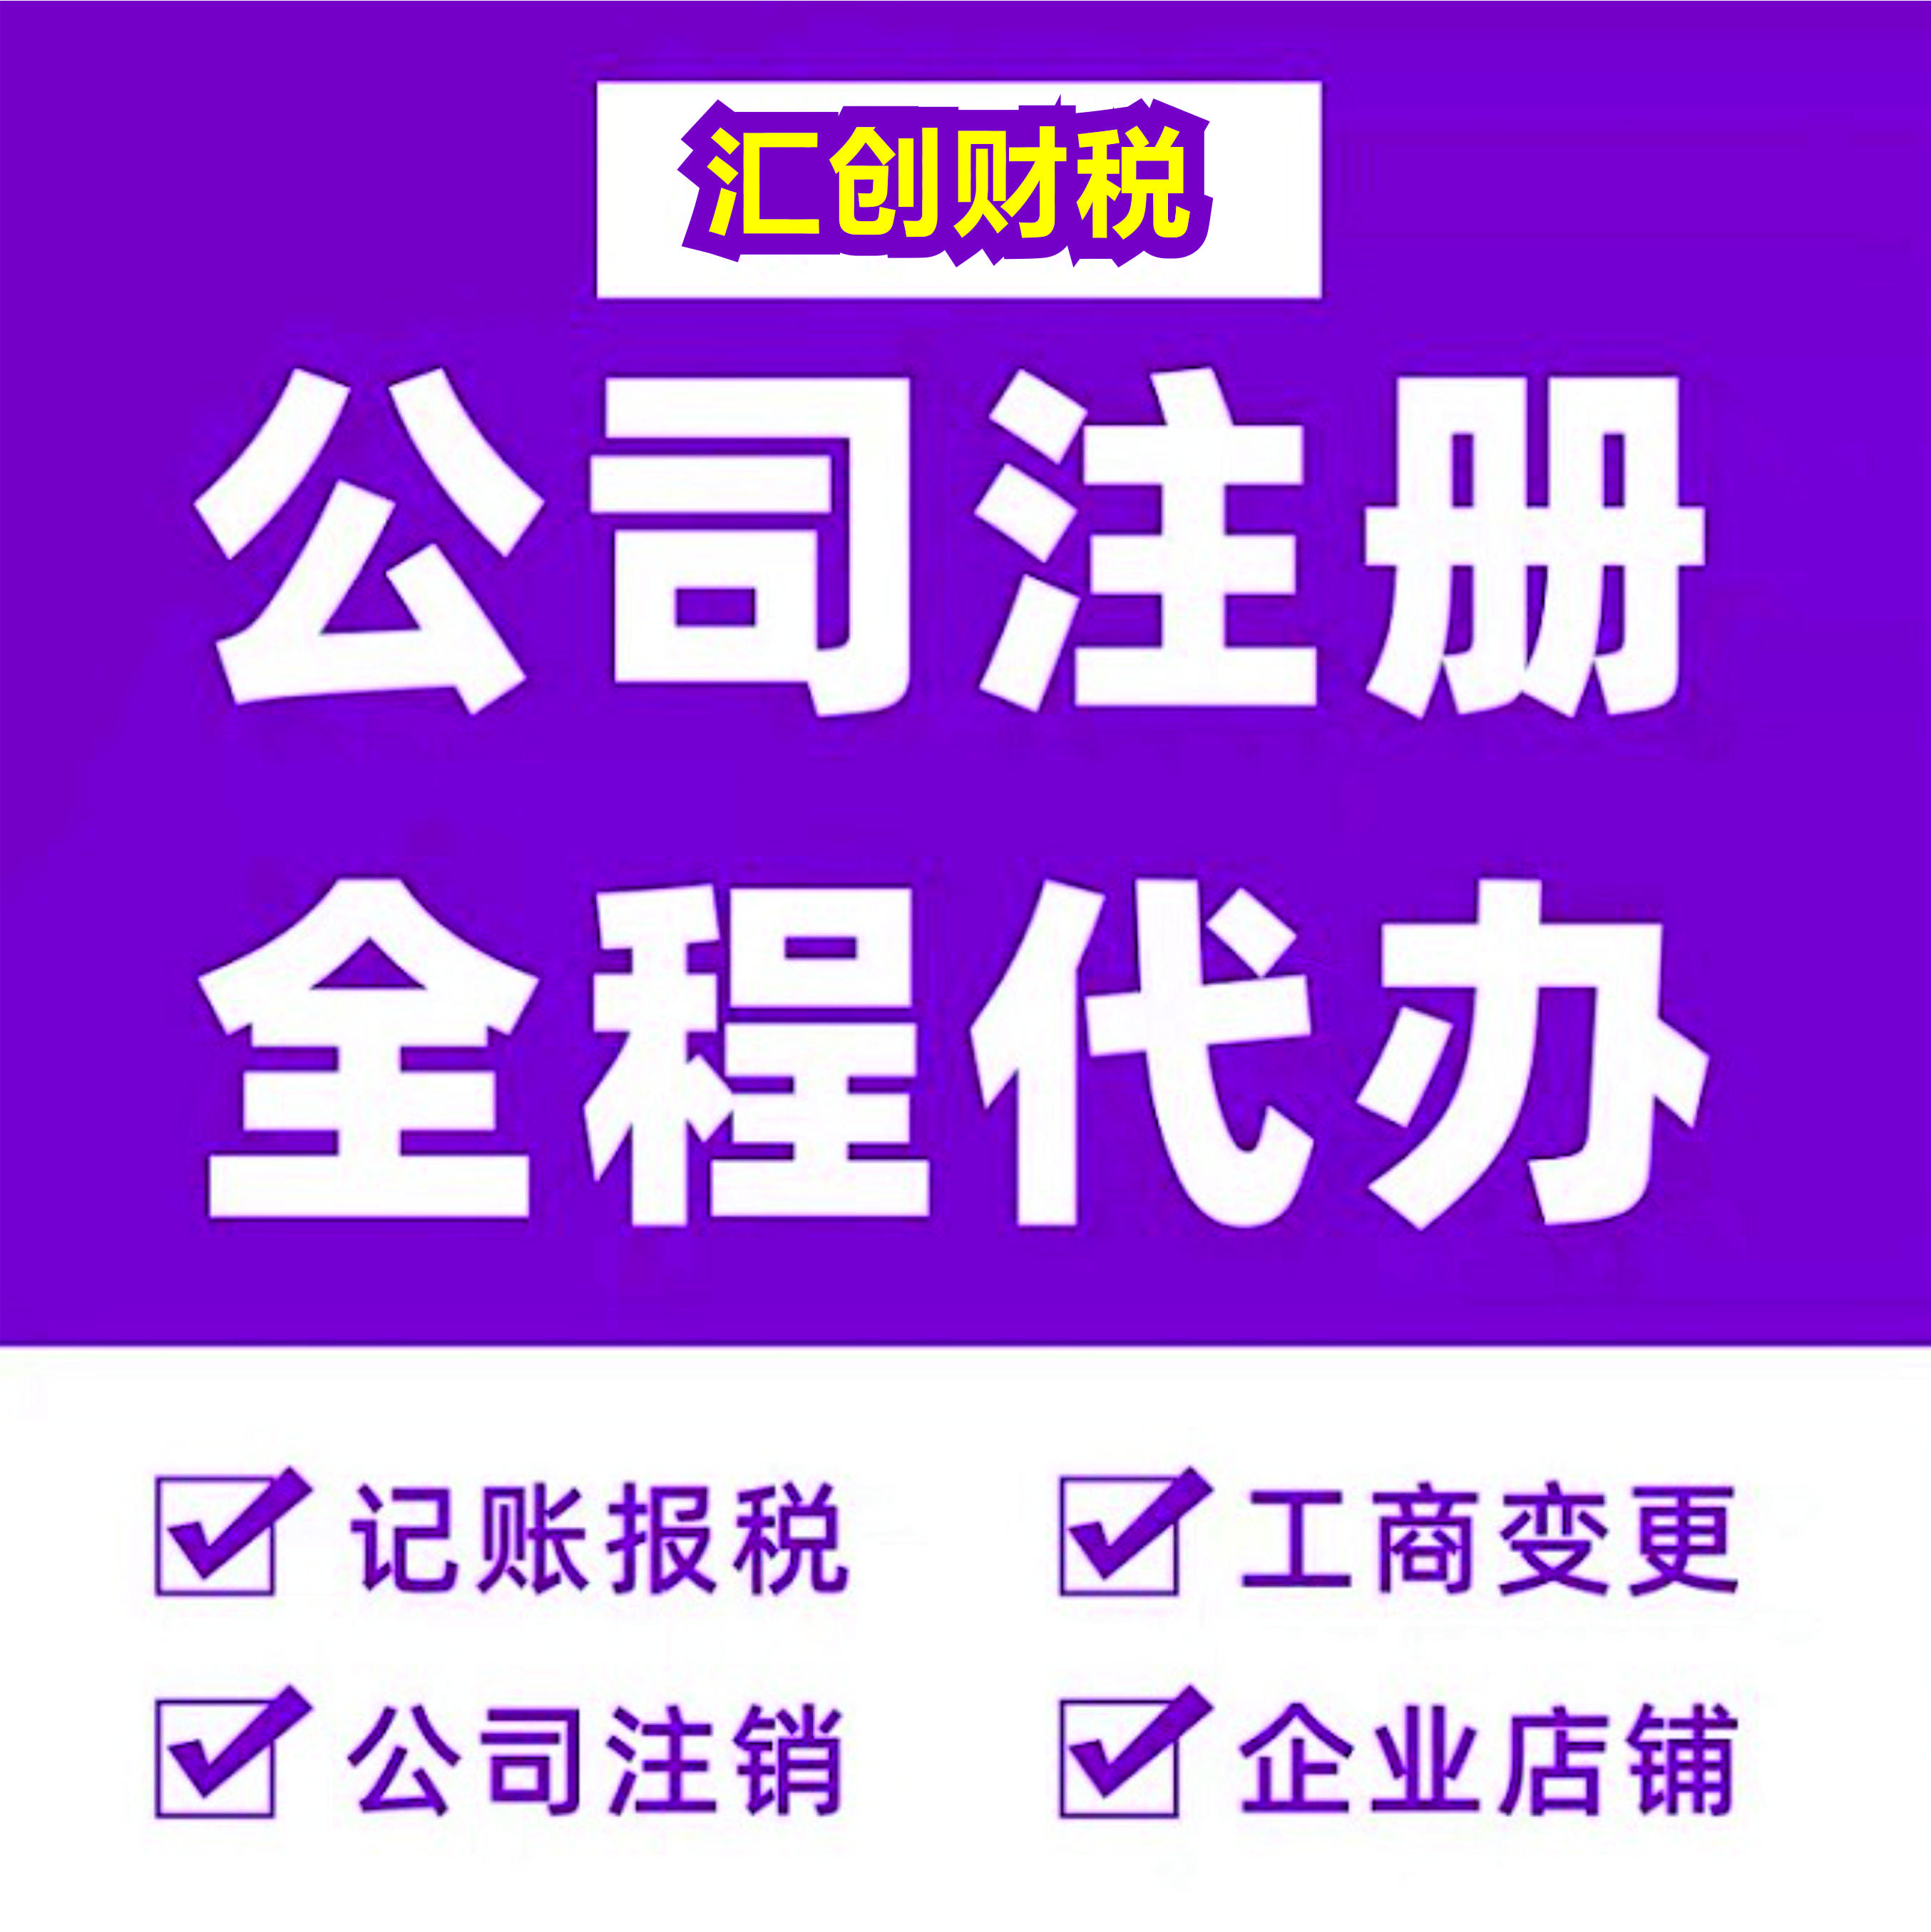 硚口注册公司-专注于武汉市场-熟悉办理流程